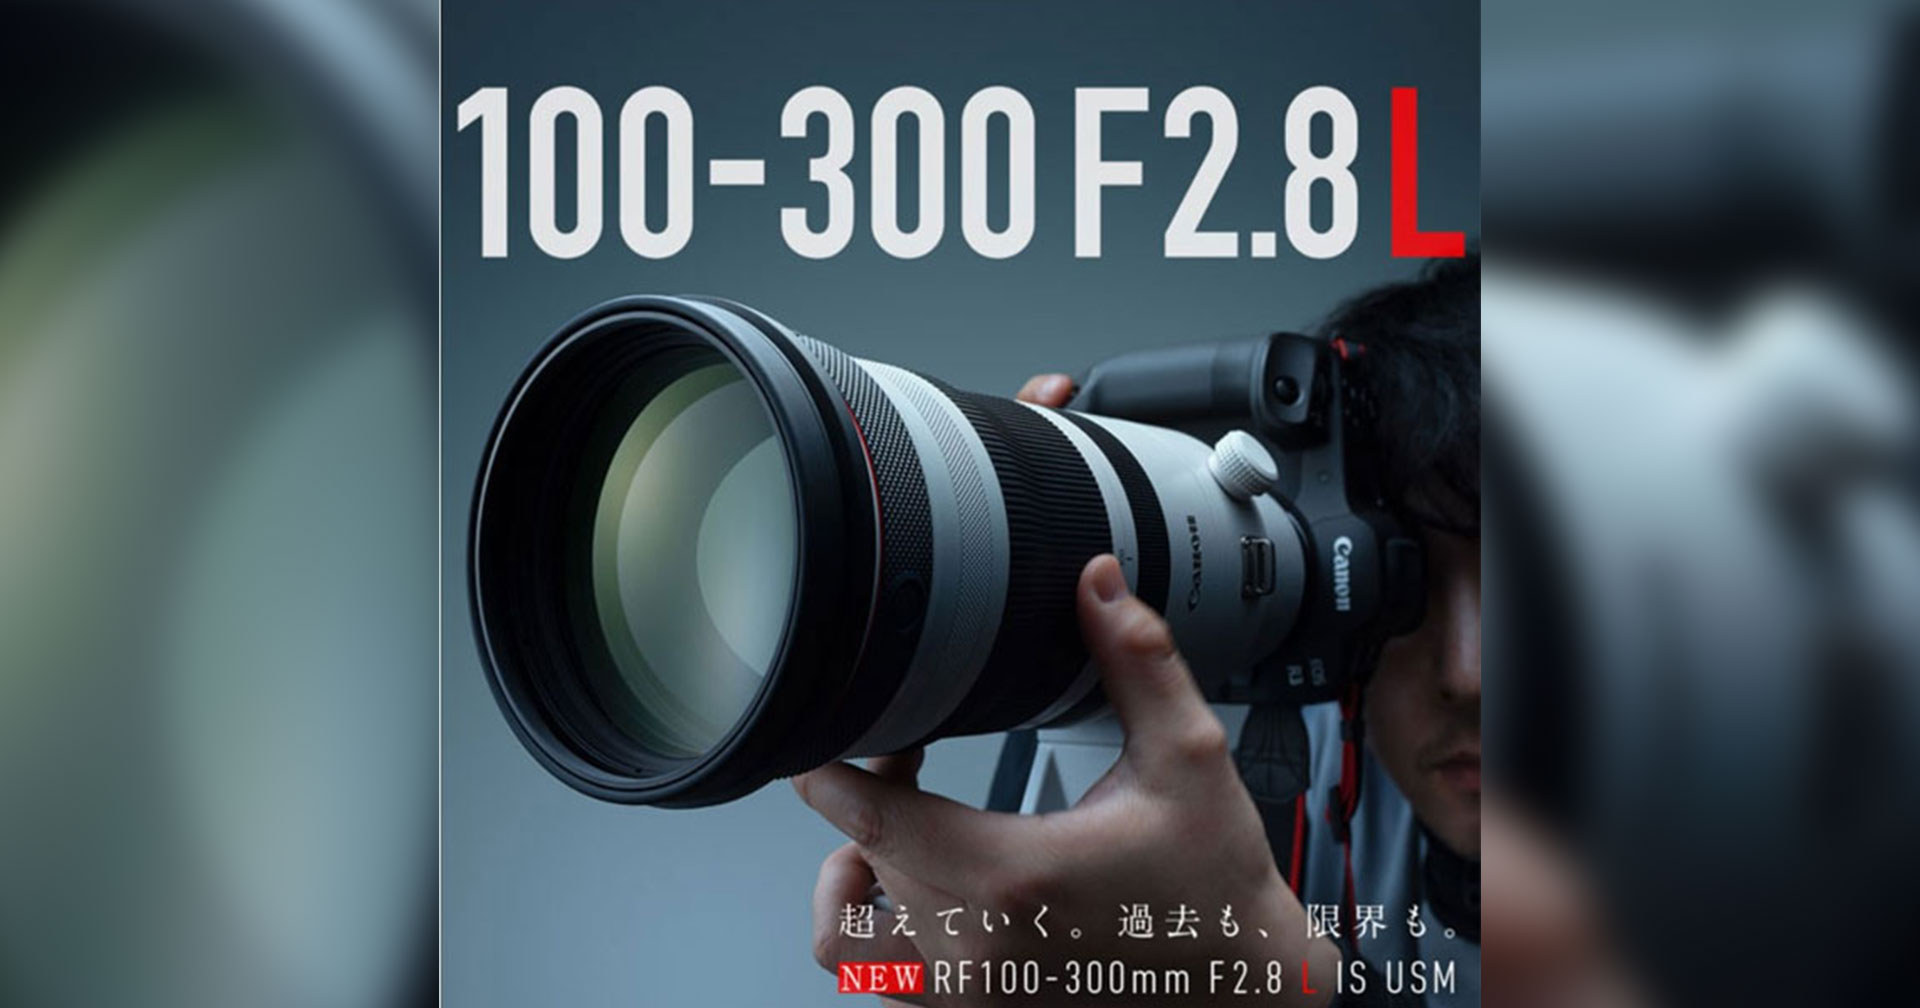 หลุดภาพแรก! Canon RF 100-300mm F2.8L IS USM ก่อนเปิดตัว